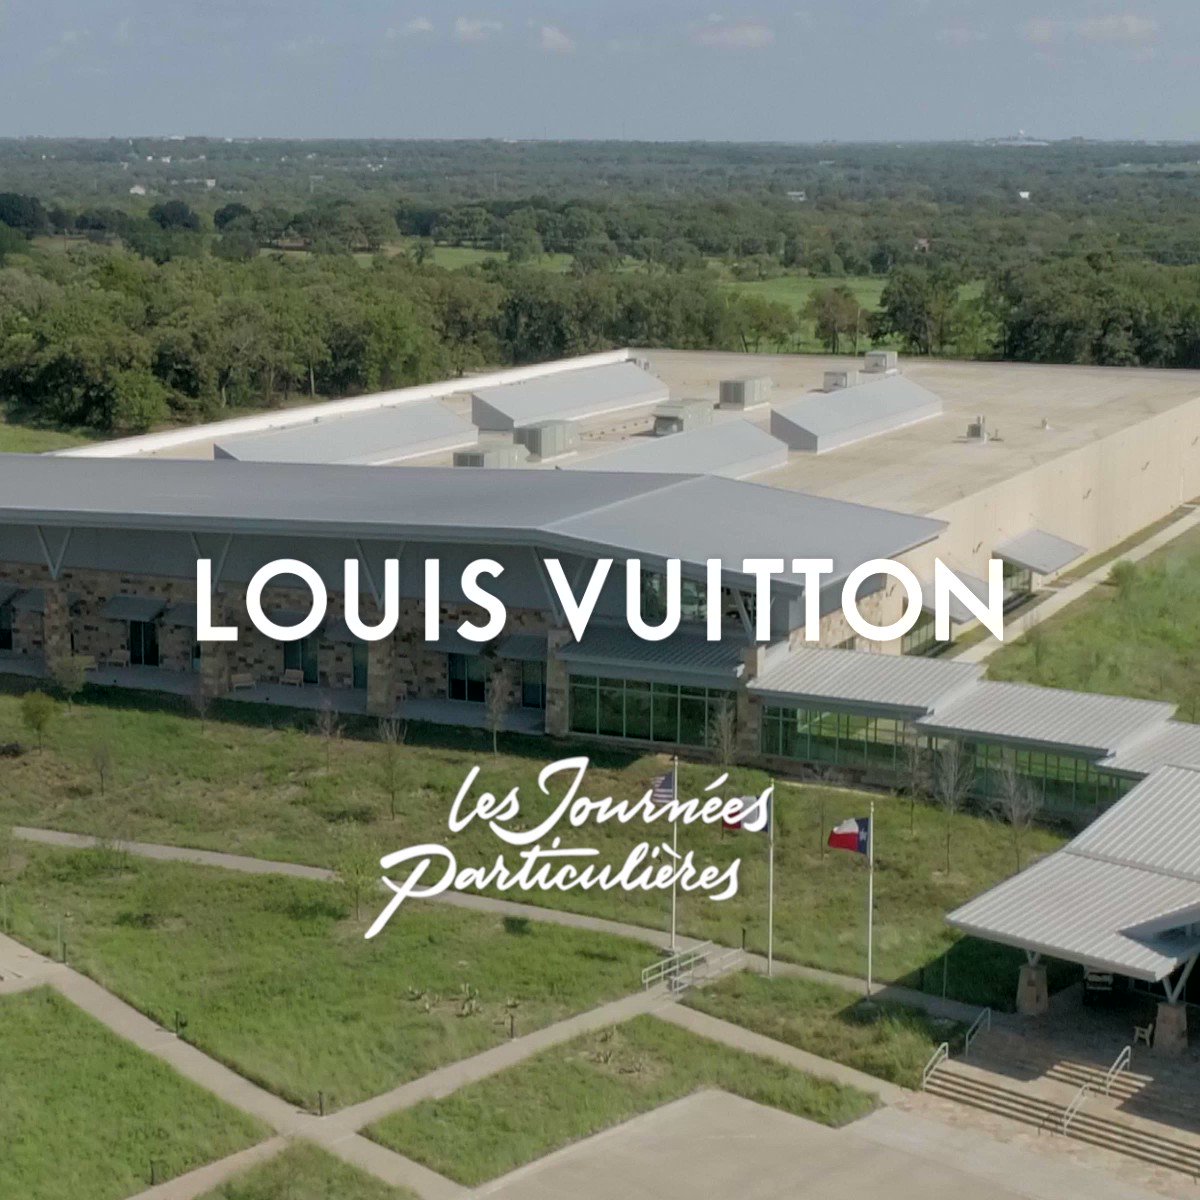 Louis Vuitton Dallas Factory